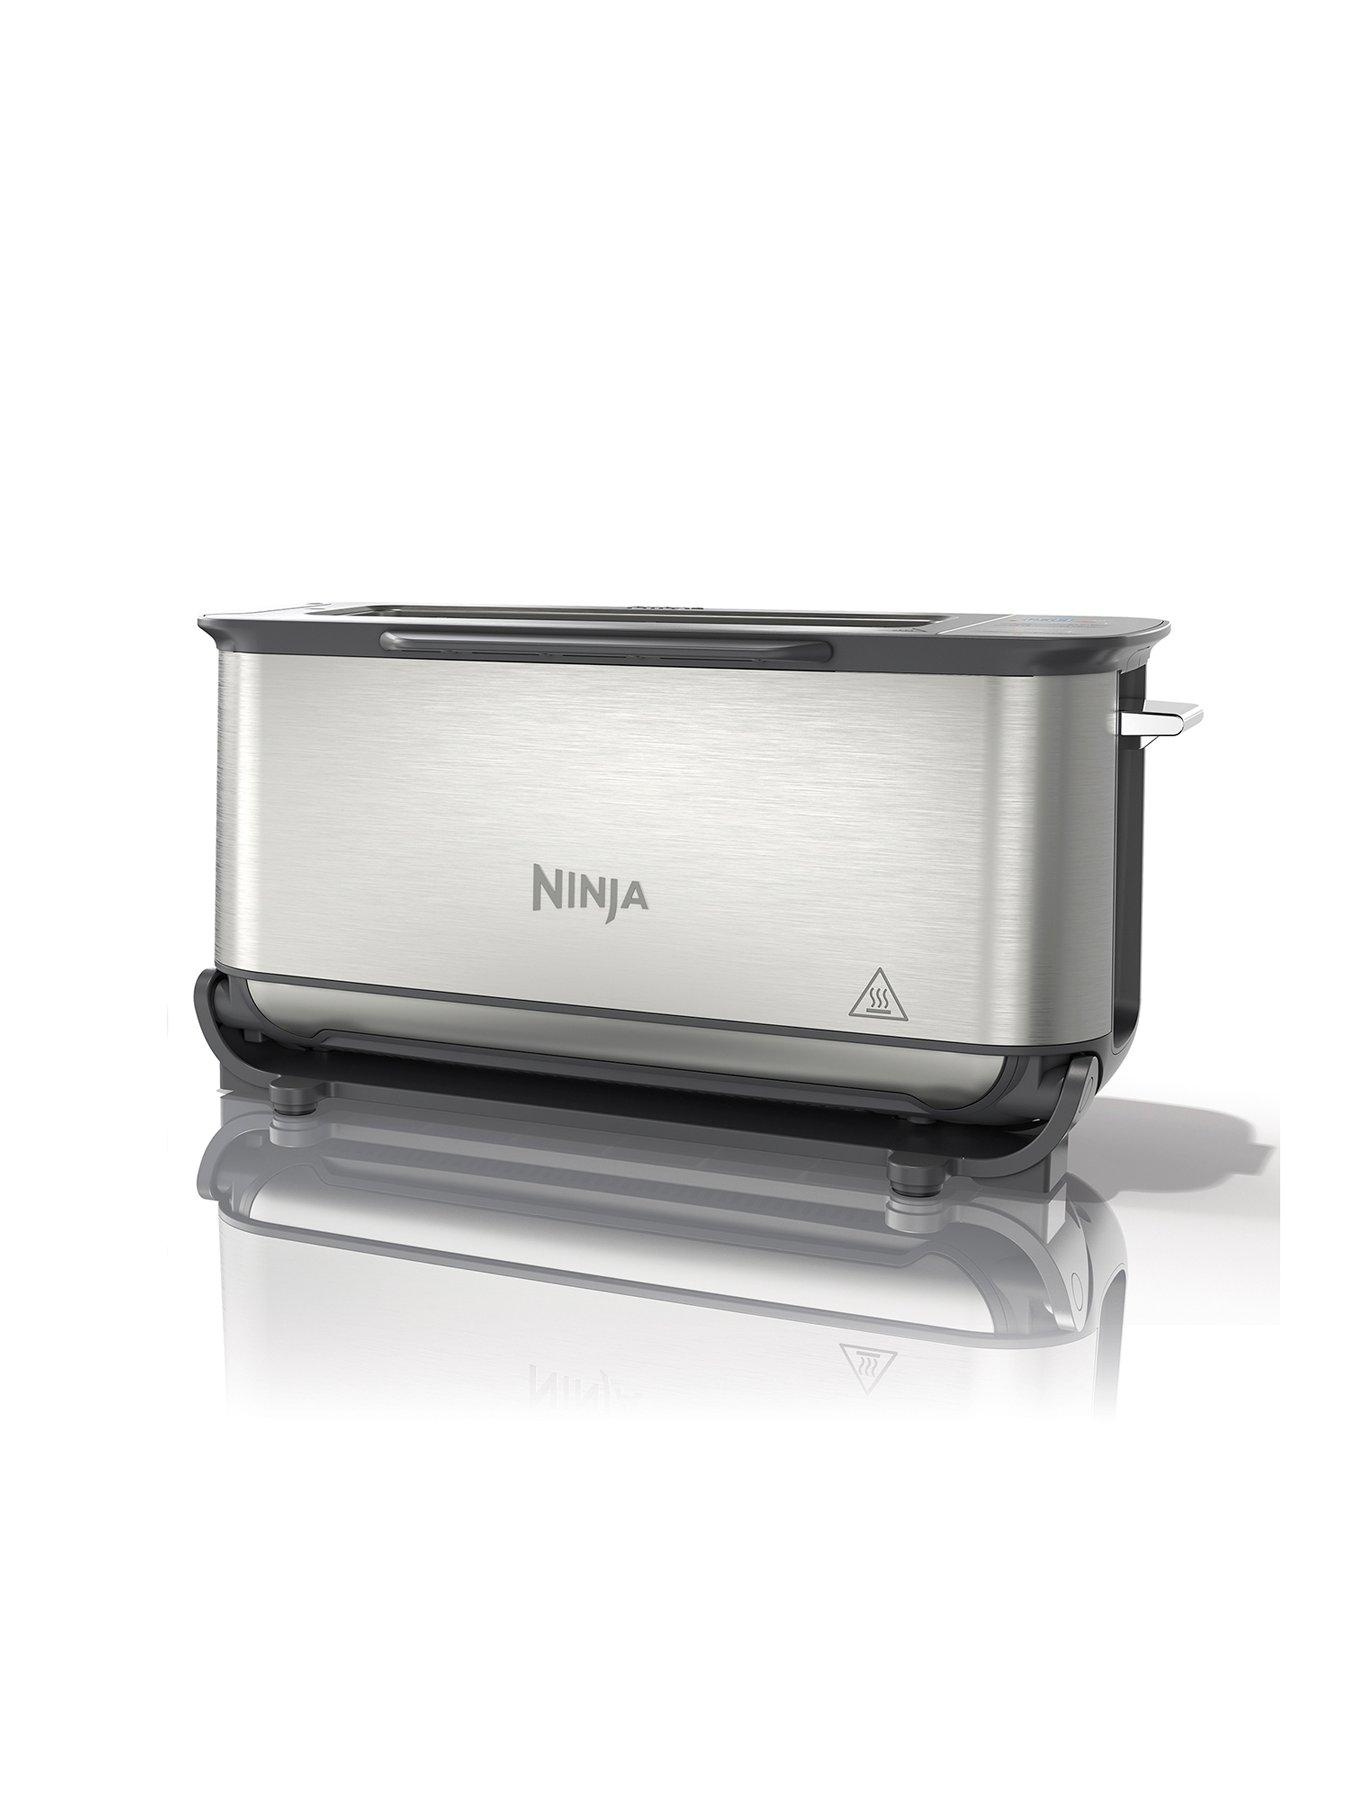 Ninja Foodi 3-in-1 Toaster, Grill & Panini Press [Stainless Steel